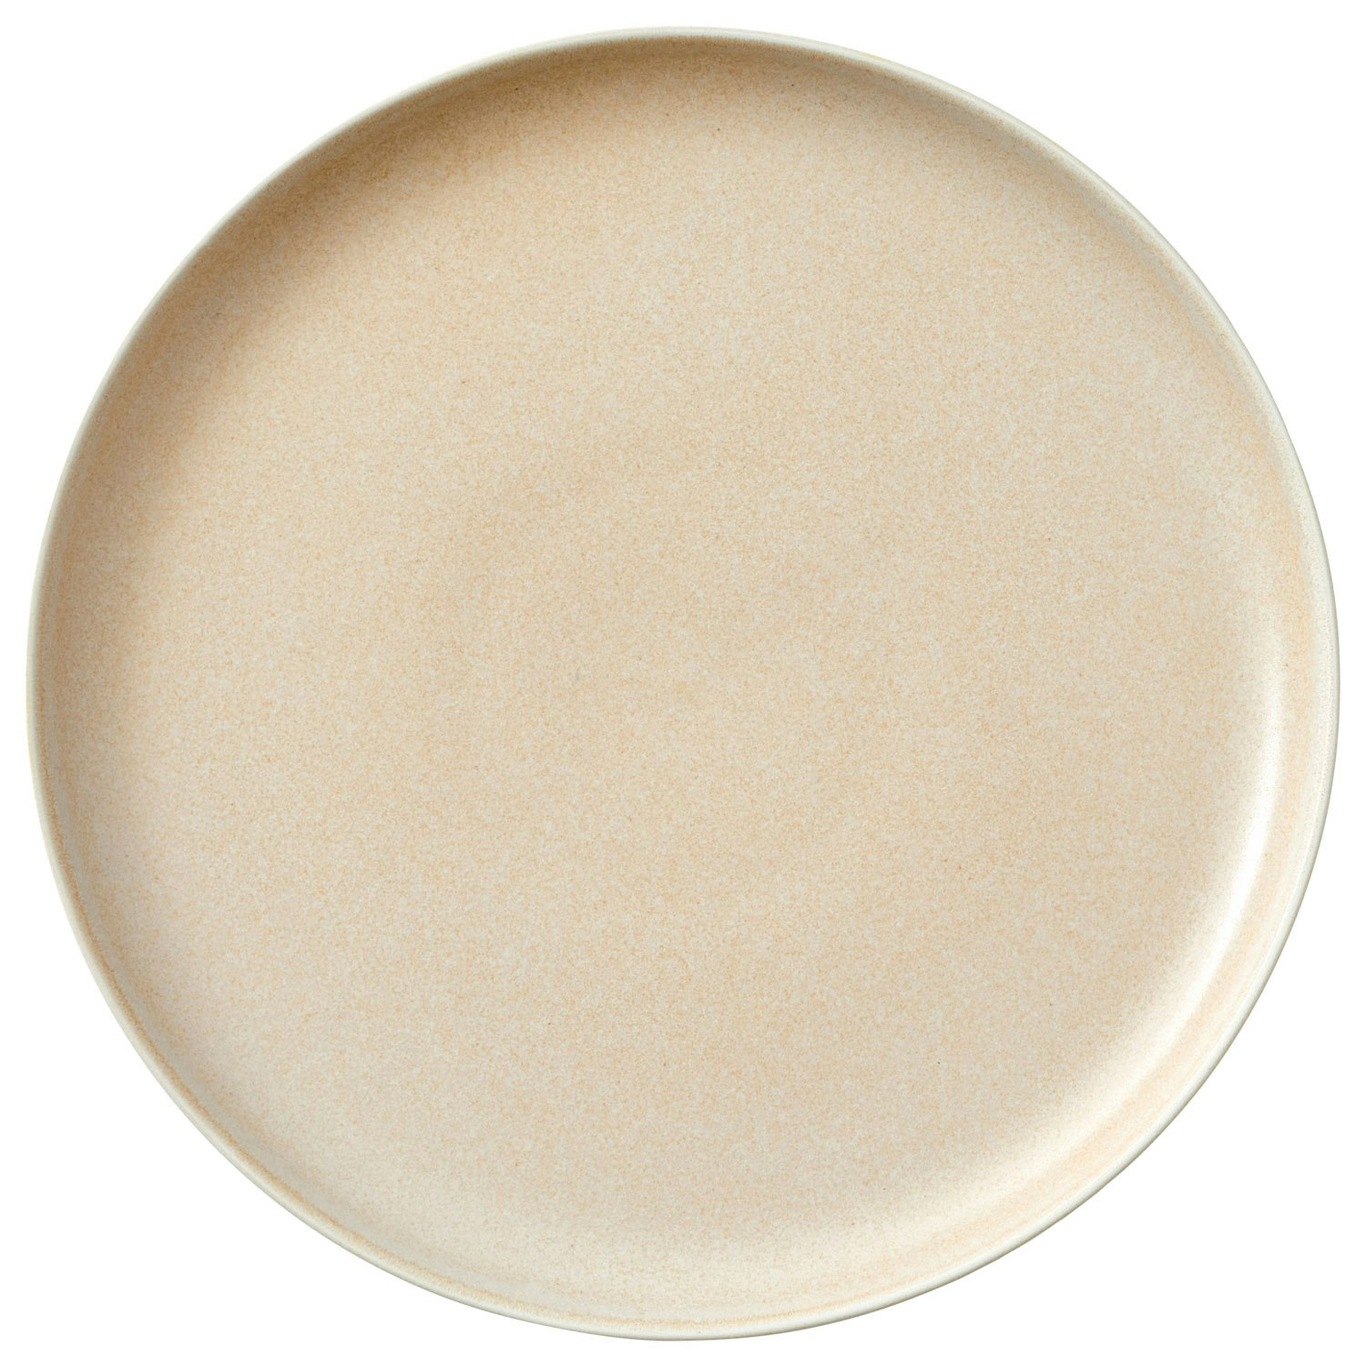 North Lunch Plate 21 cm, Matte White/Matte Sand